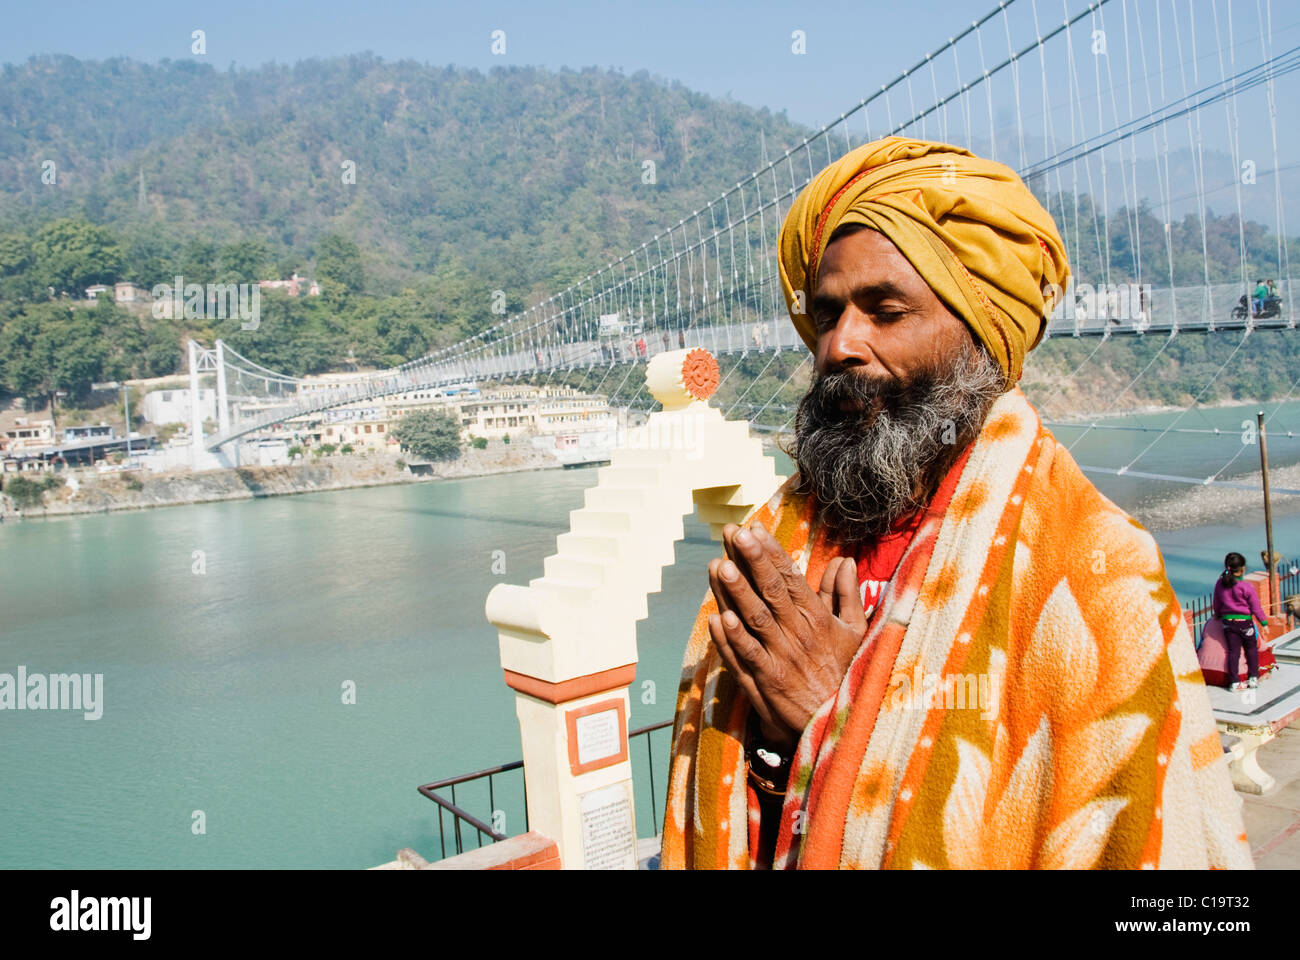 Sadhu praying with Lakshman Jhula in the background, Ganges River, Rishikesh, Uttarakhand, India Stock Photo